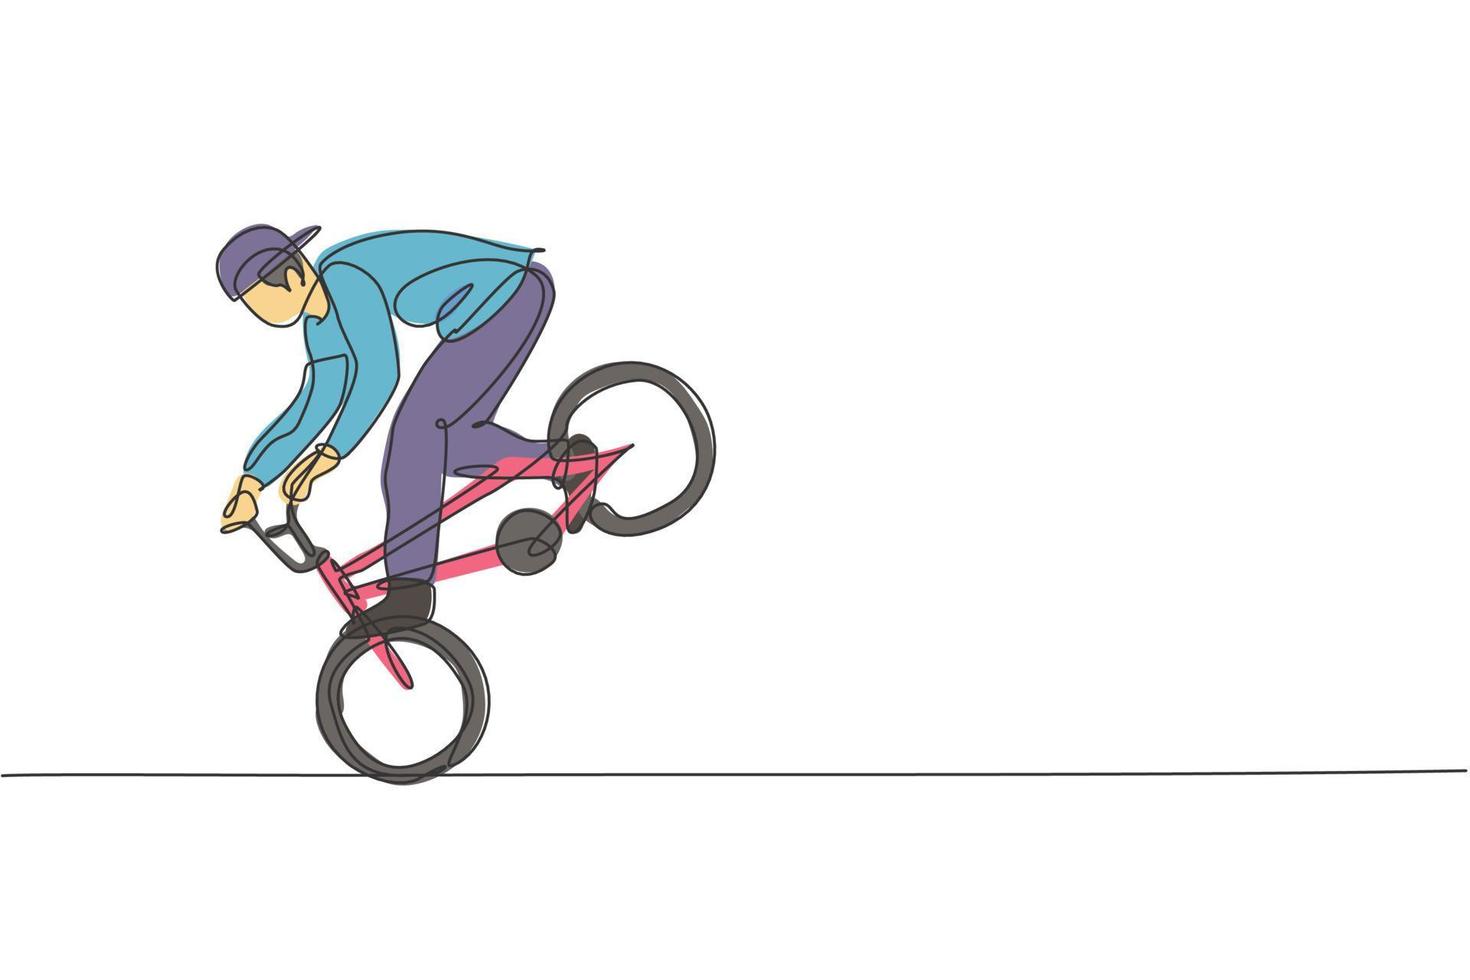 il disegno a linea continua singola del giovane ciclista bmx mostra un trucco rischioso estremo nello skatepark. concetto di stile libero bmx. illustrazione vettoriale alla moda di una linea di disegno per i media di promozione freestyle